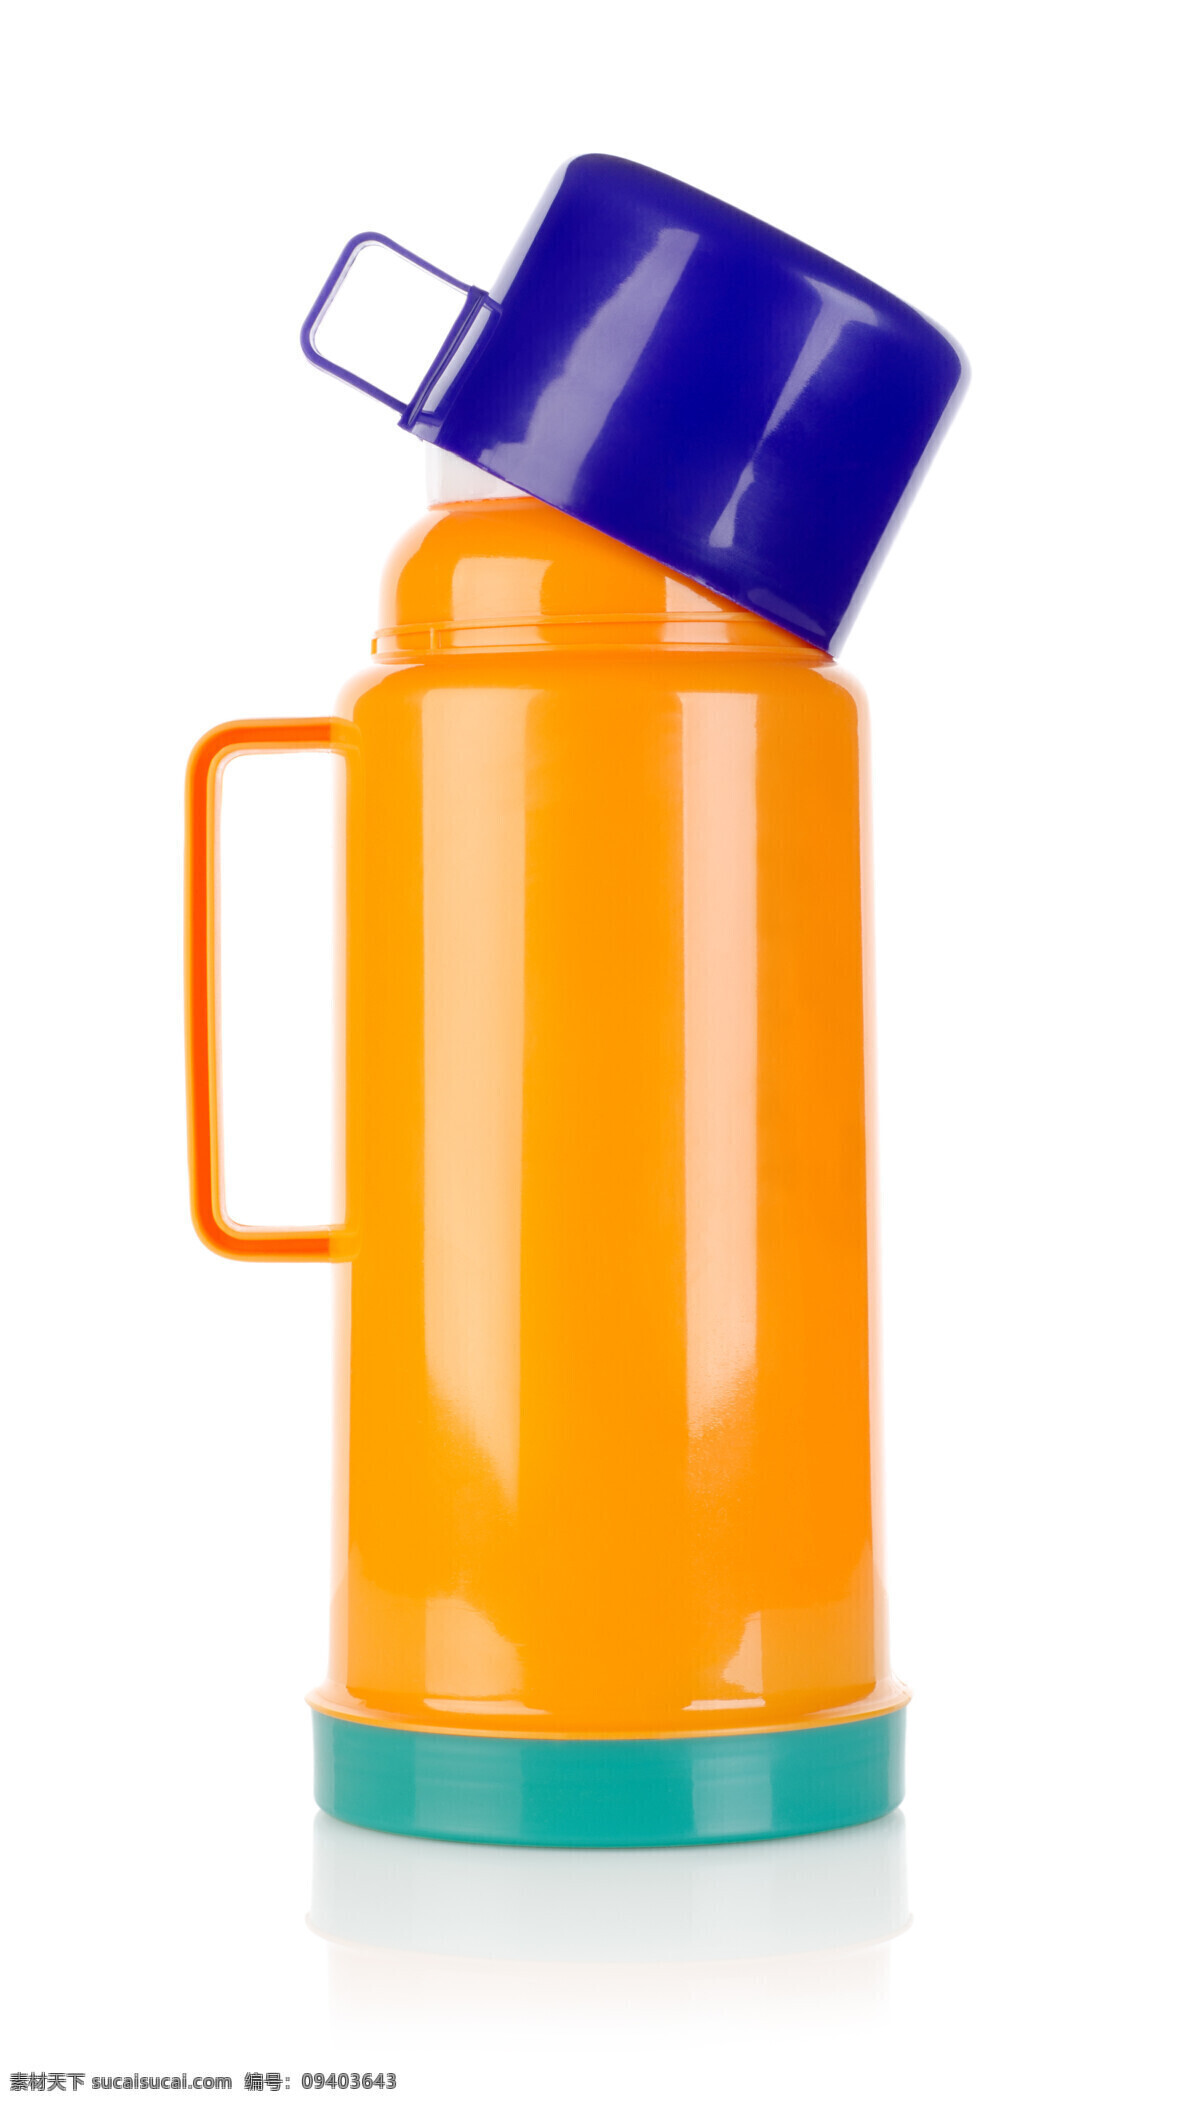 保暖 水瓶 保暖水瓶 温水瓶 水壶 日用品 塑料日用品 日常用品 生活用品 生活百科